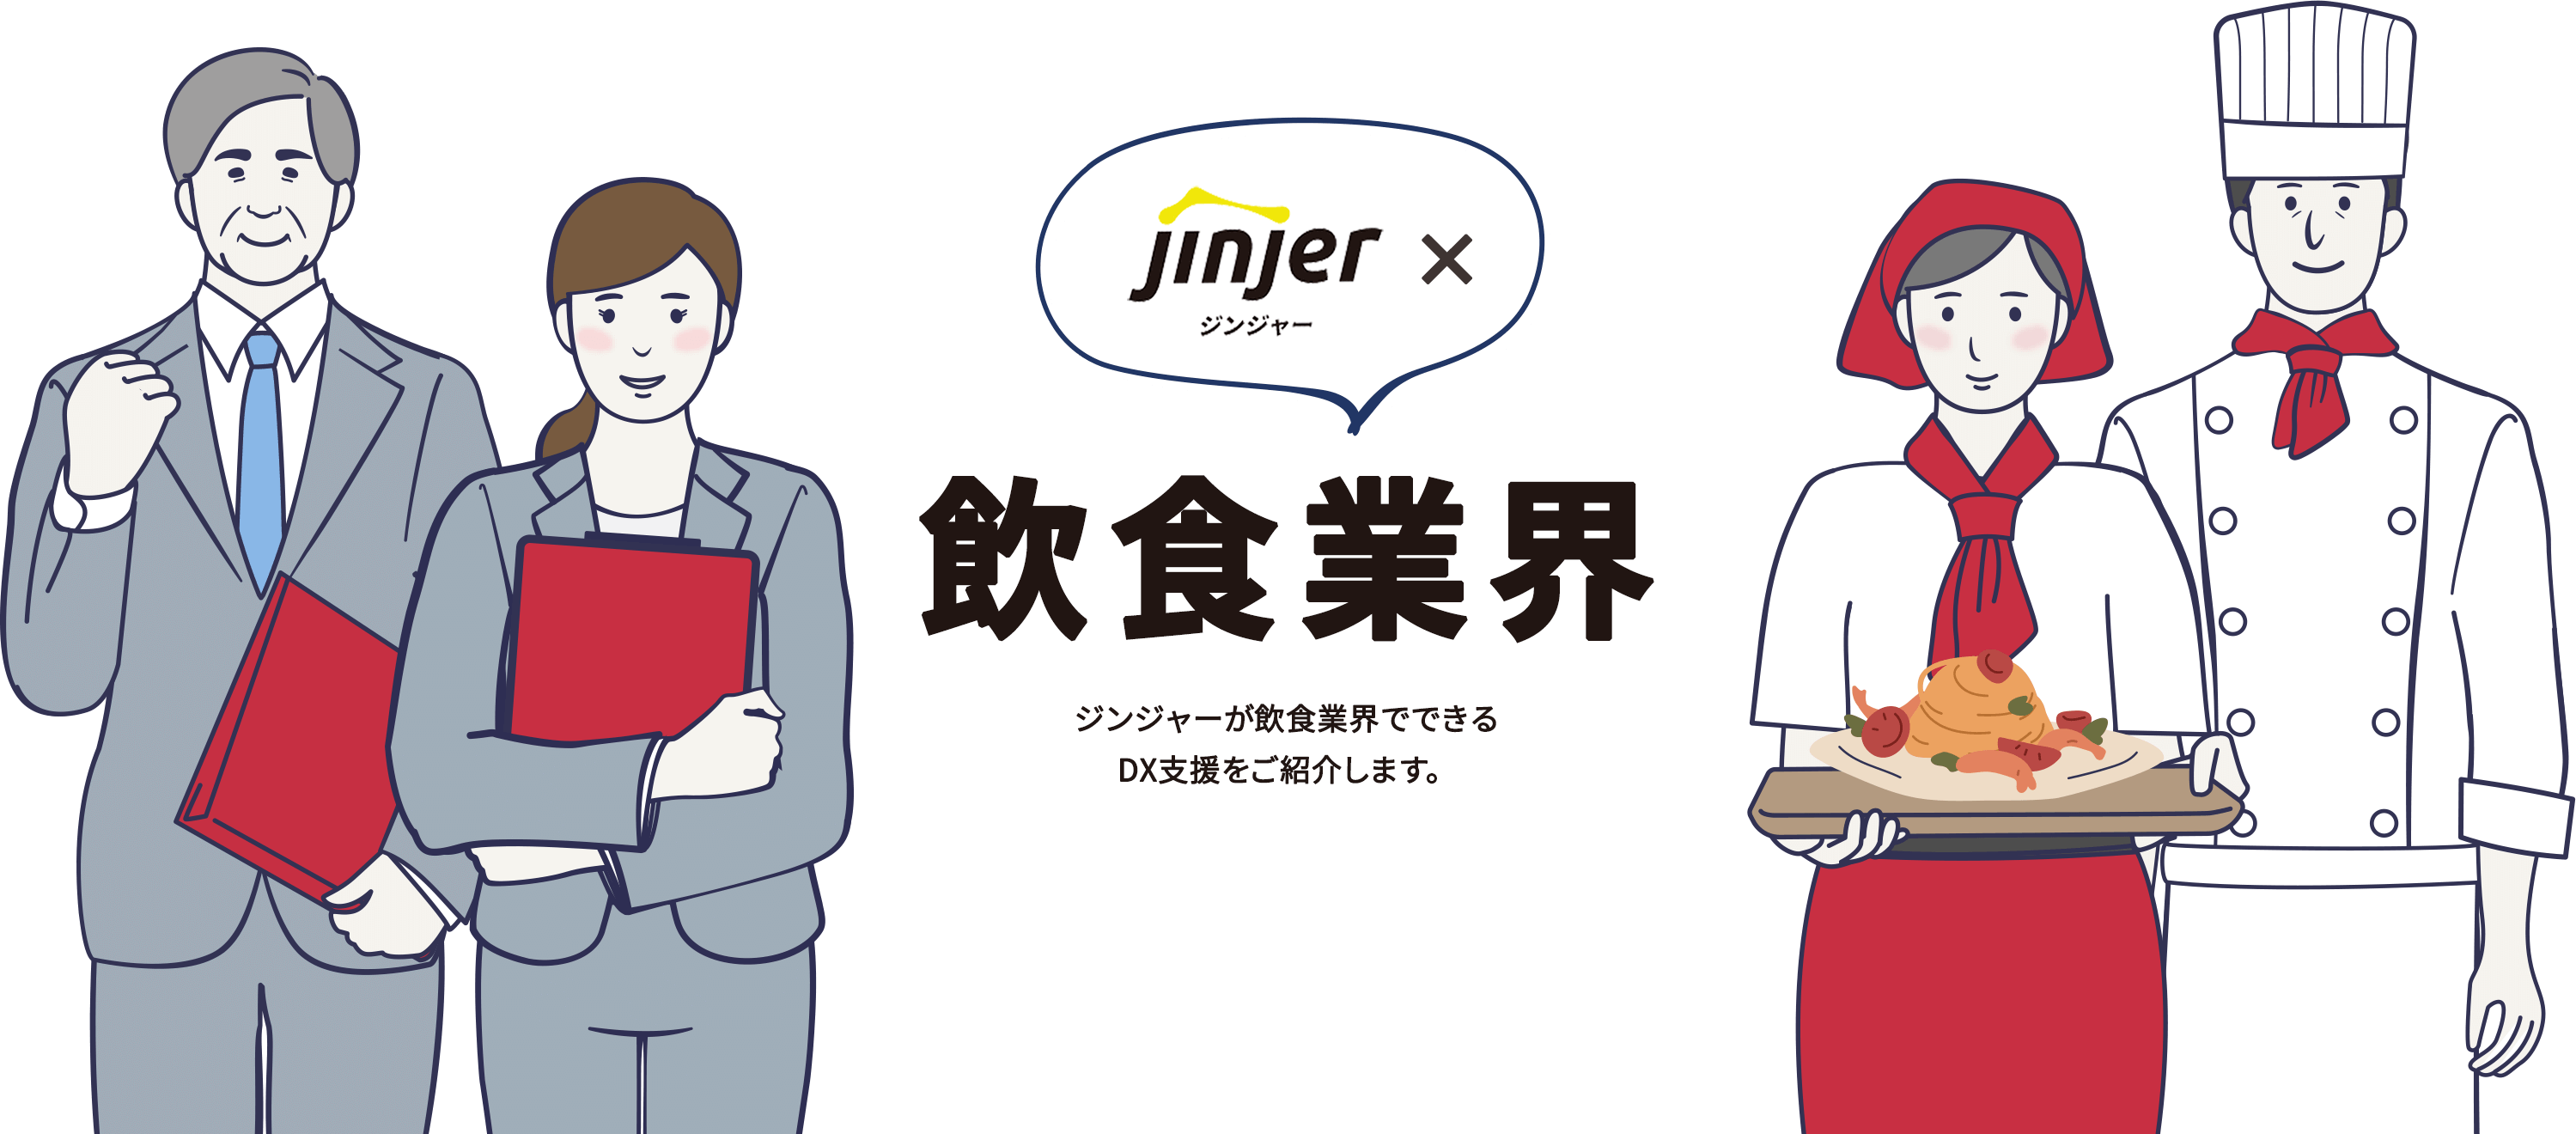 ジンジャー×飲食業界 ジンジャーが飲食業界でできるDX支援をご紹介します。